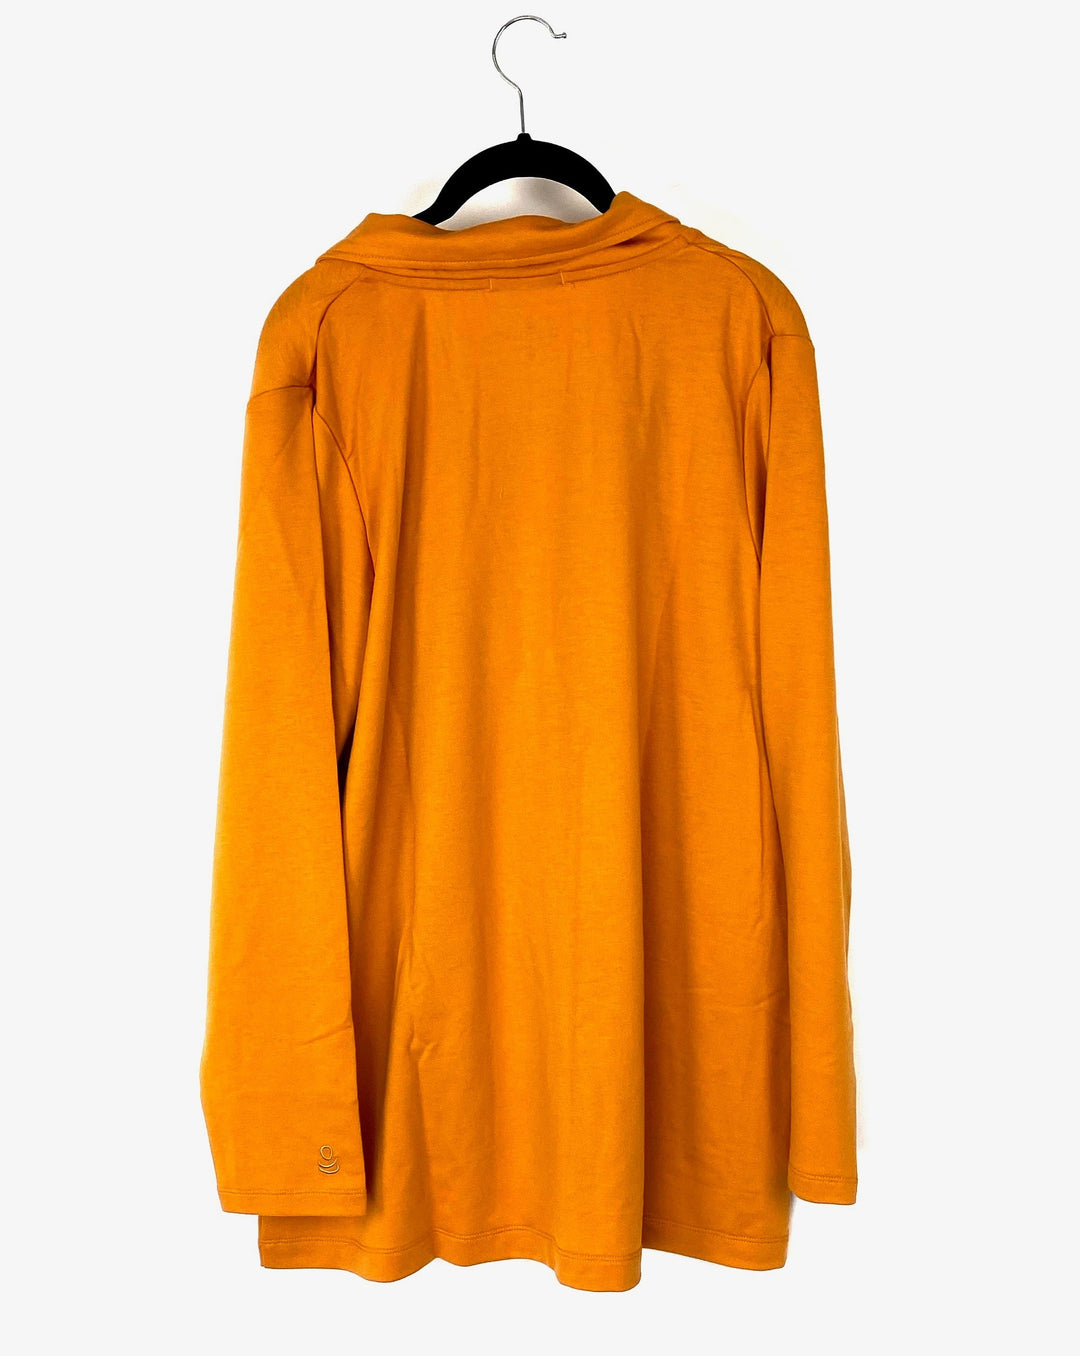 Orange Cardigan - Size 2/4, 6/8 and 10/12